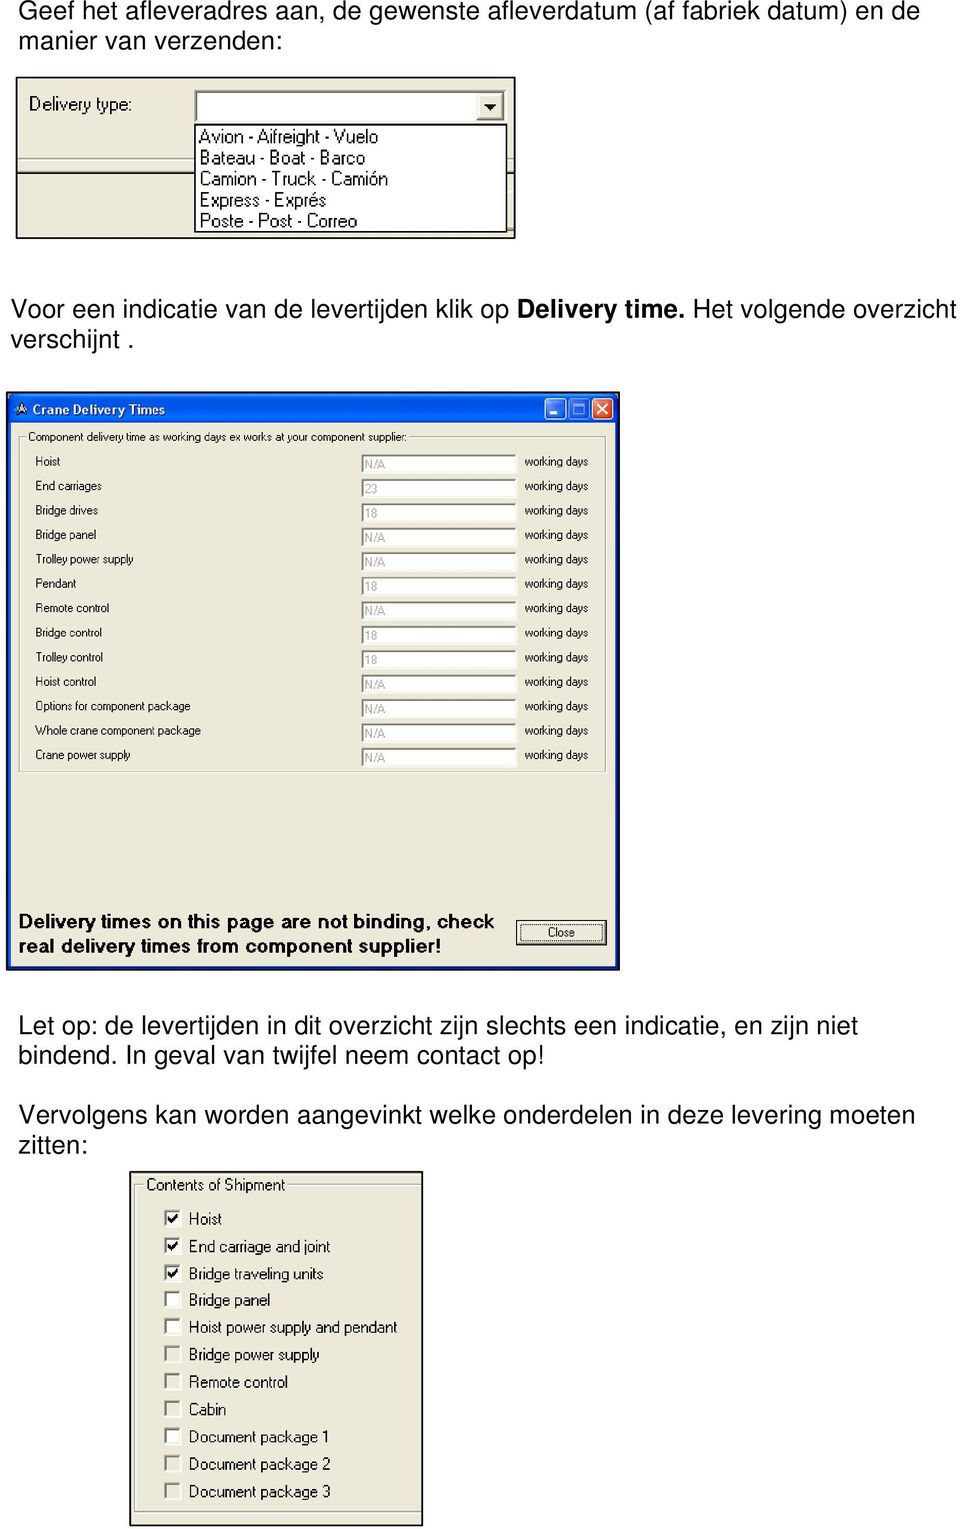 Let op: de levertijden in dit overzicht zijn slechts een indicatie, en zijn niet bindend.